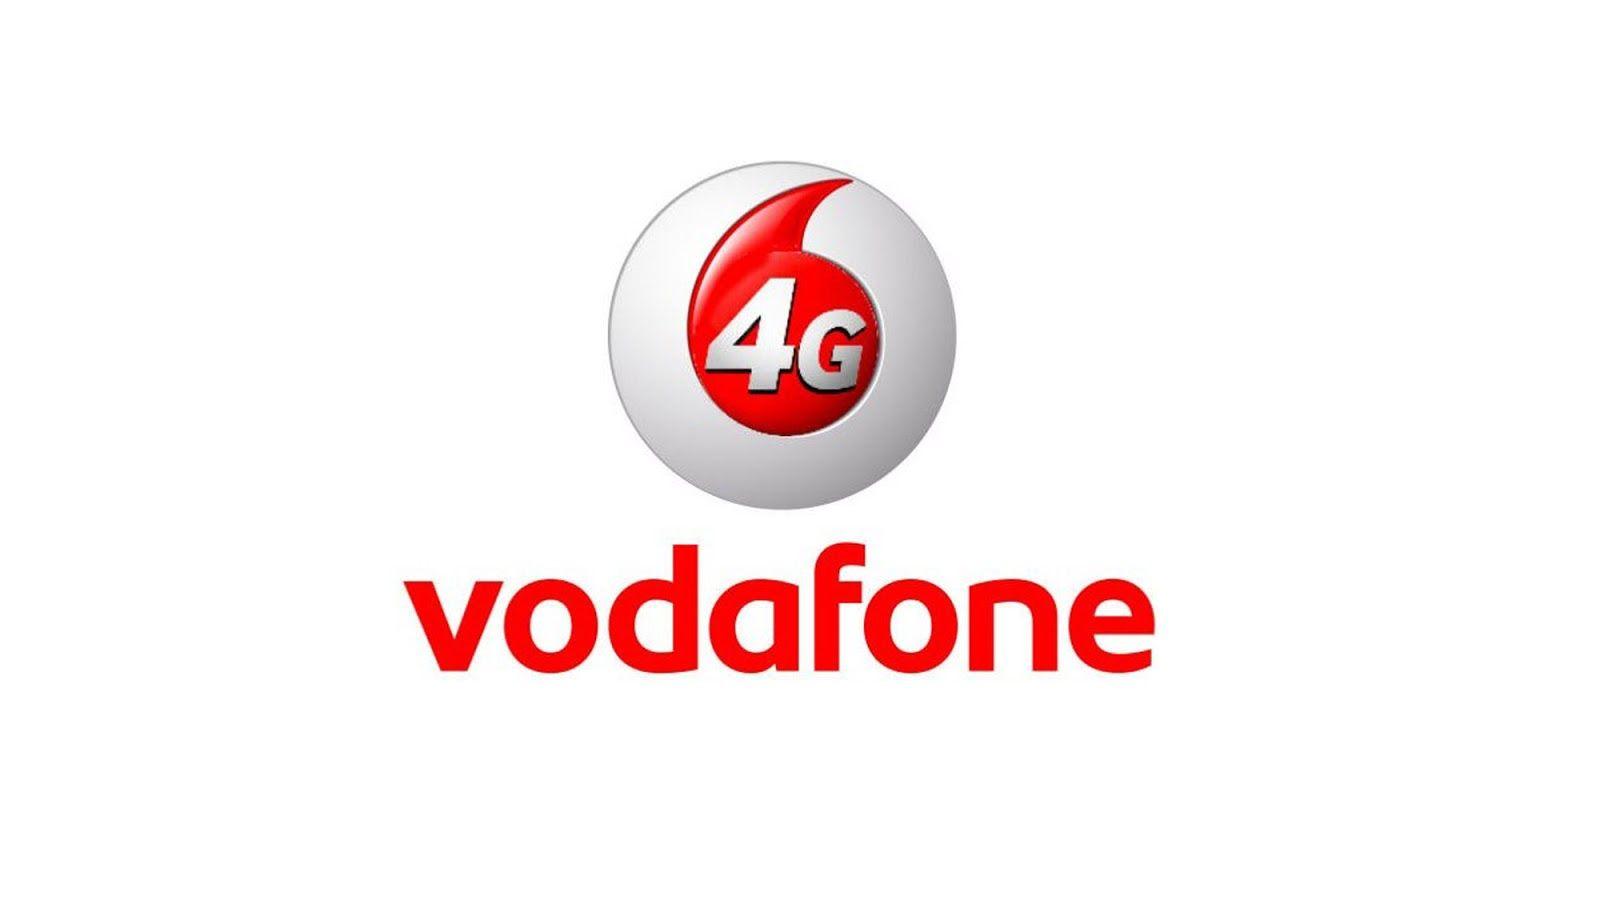 ဒေတာဝန်ဆောင်မှုများကို အကျိုးတူဖန်တီးပြုလုပ်သွားရန် Vodafone နှင့် Google တို့ လက်တွဲခဲ့ကြောင်း ကြေငြာ 